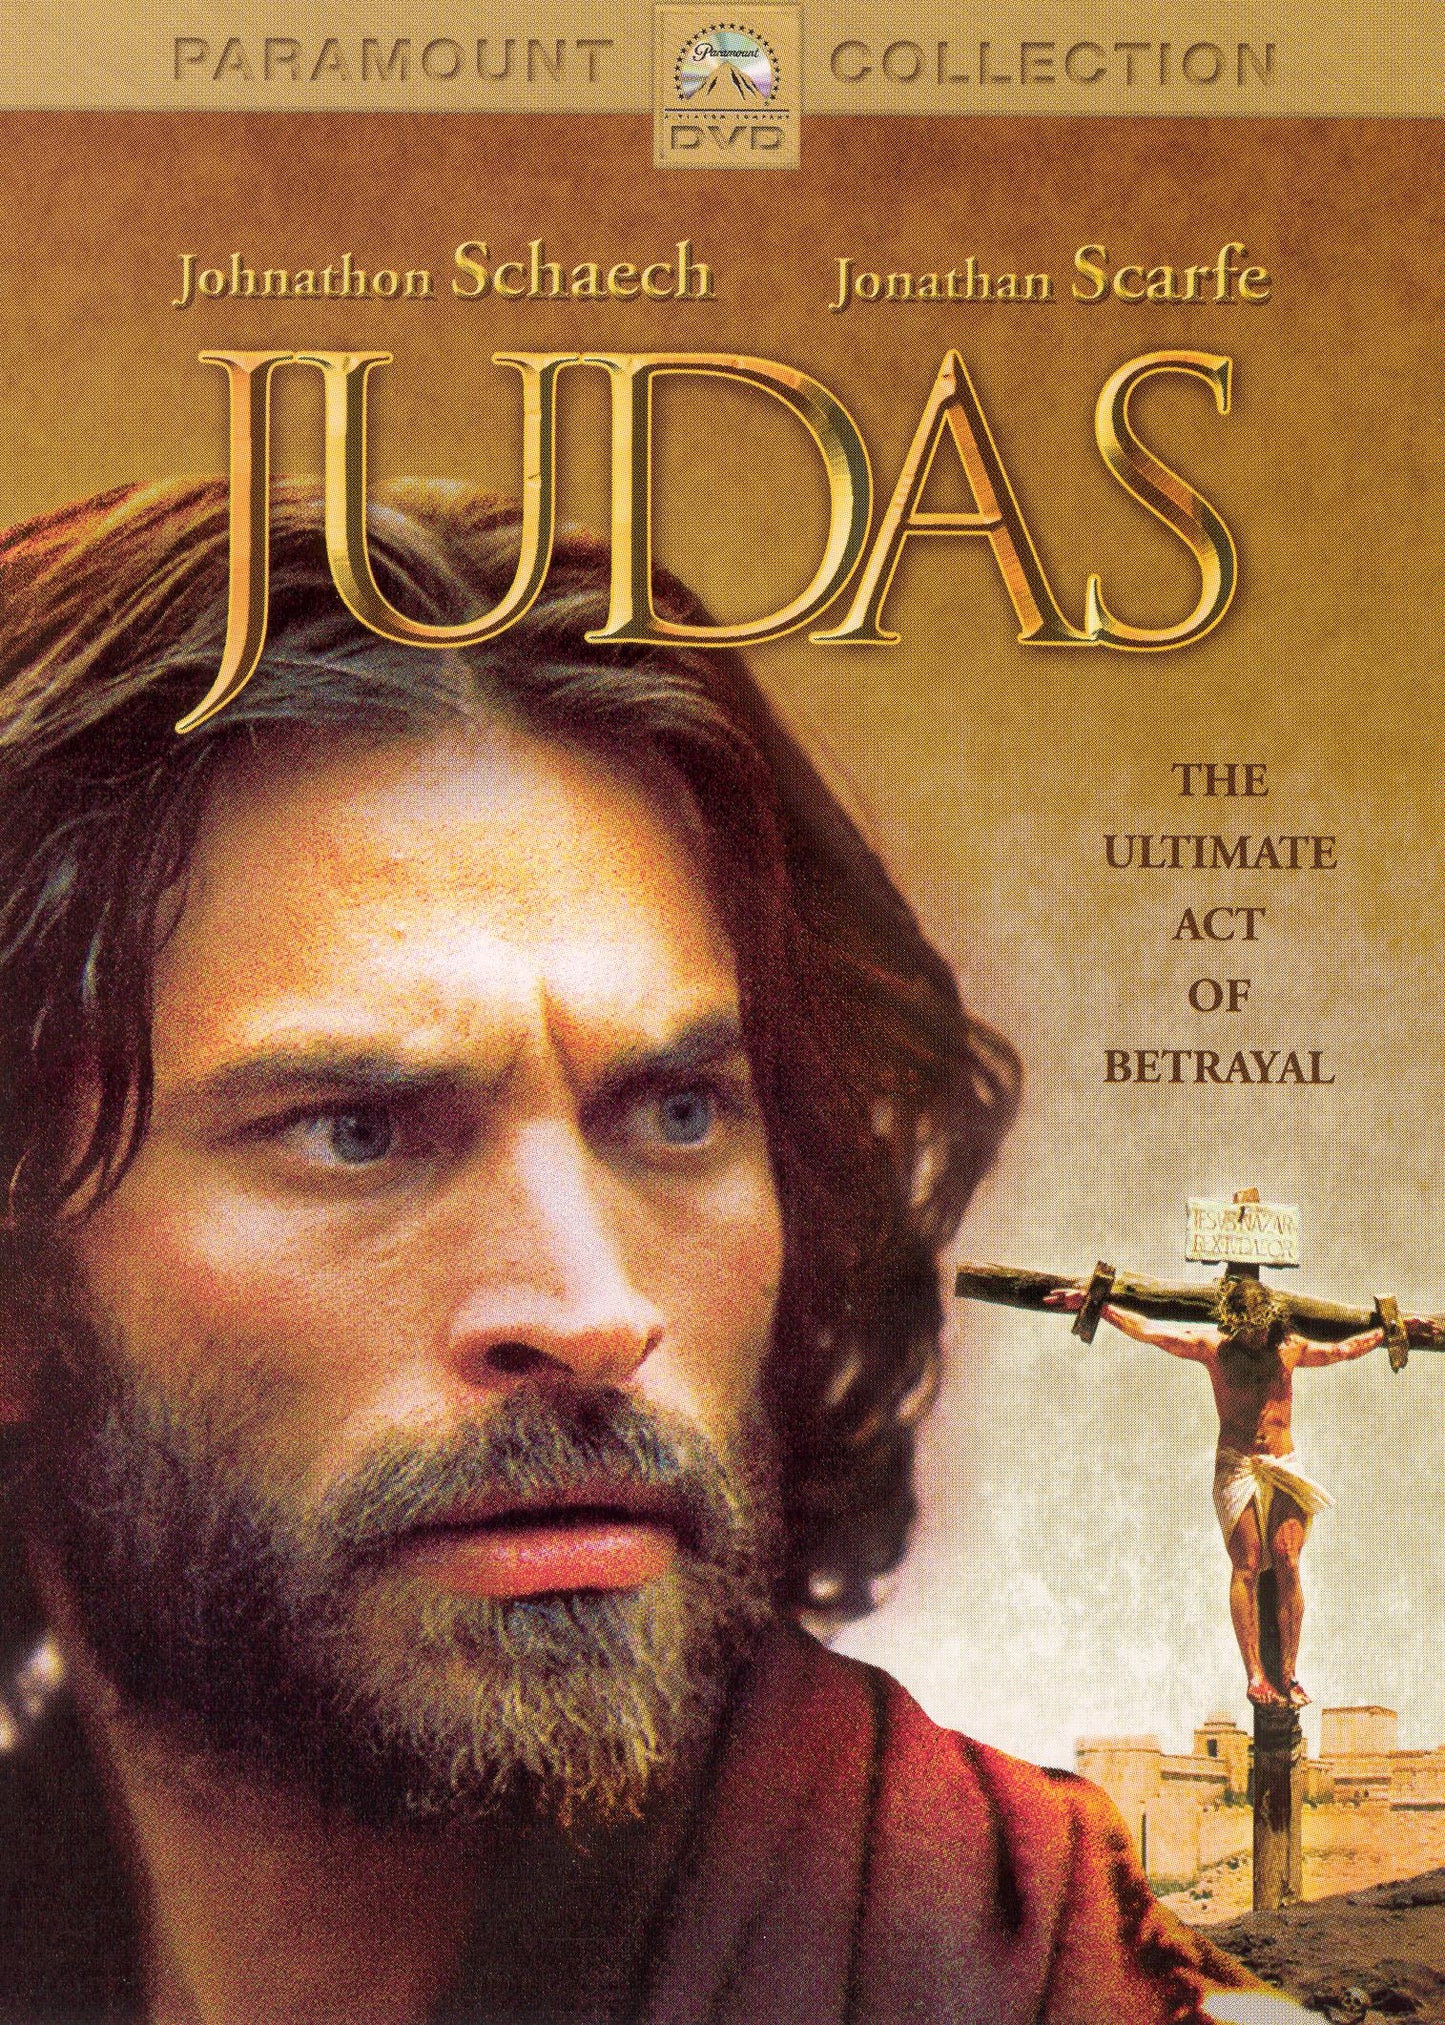 Judas cover art